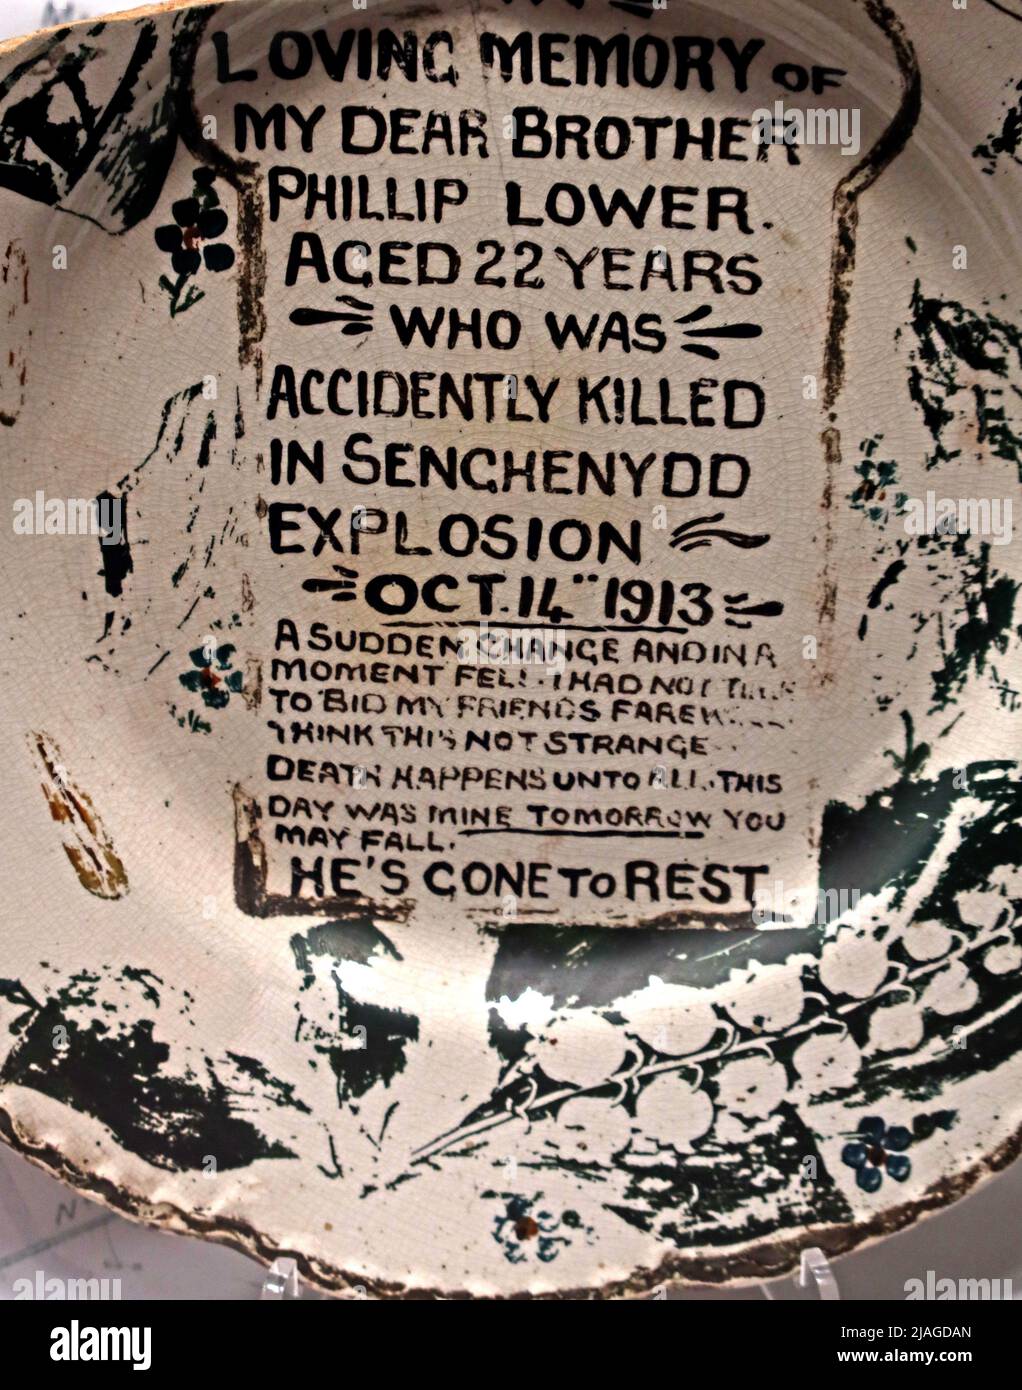 Memorial Plate, Phillip Lower, di 22 anni, che è stato accidentalmente ucciso, in Senchenydd Explosion, ottobre 14th 1913 Foto Stock